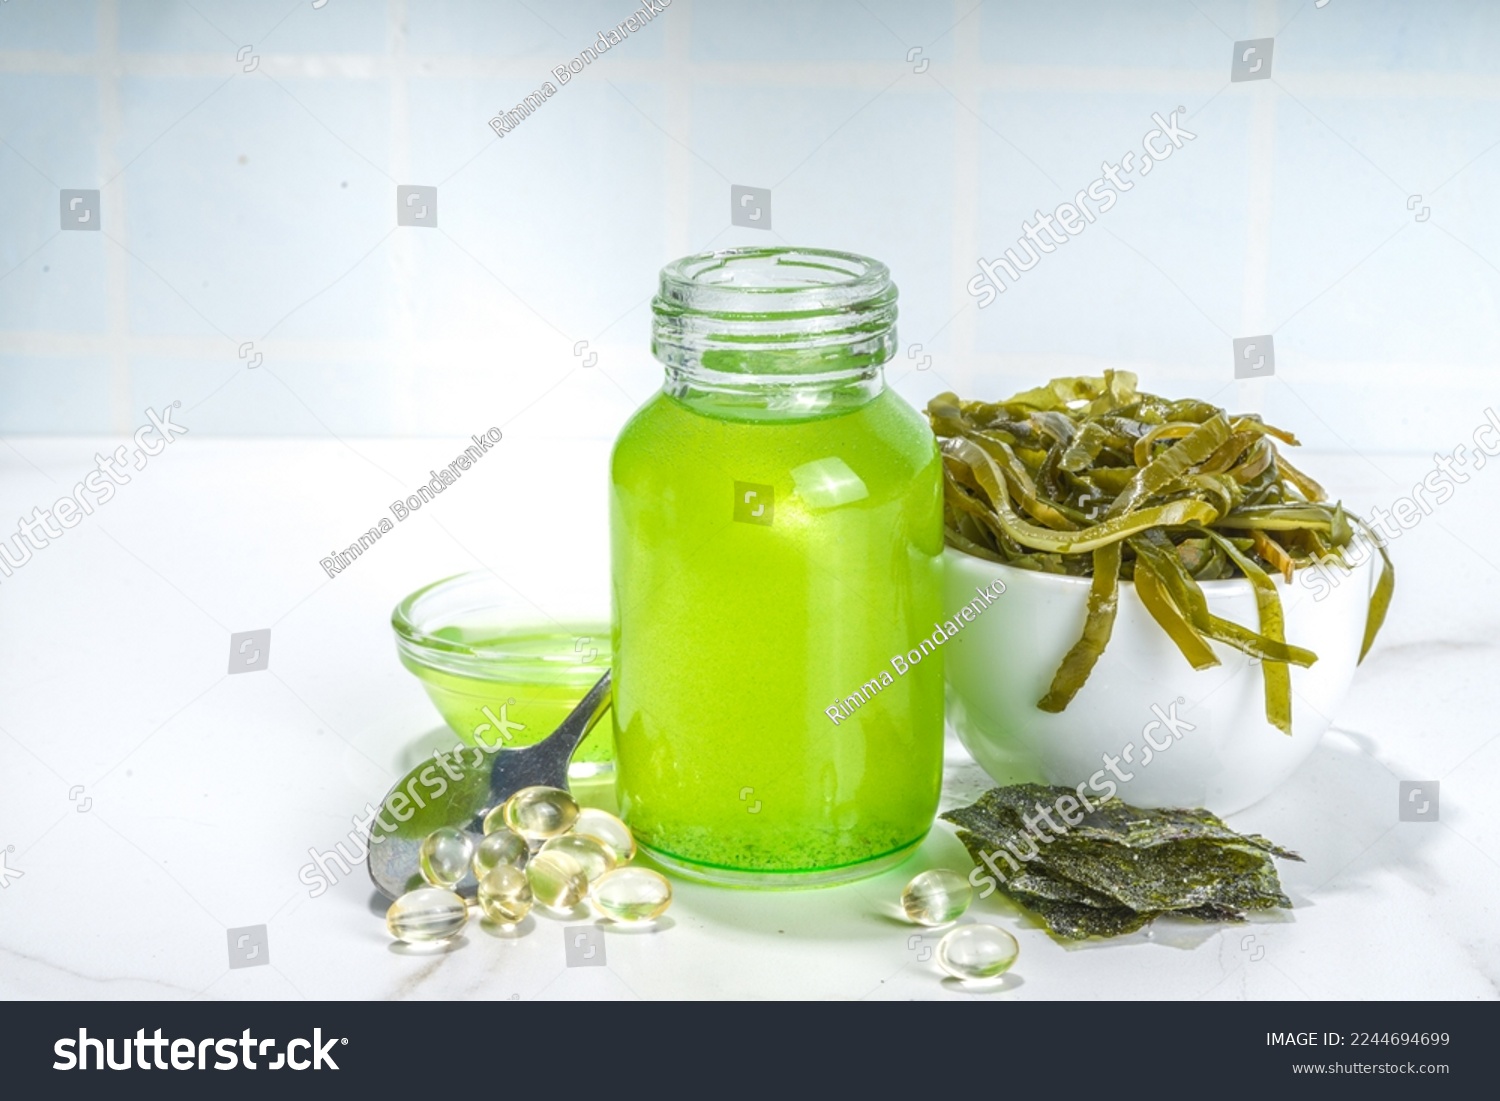 Algae based Oil, Seaweed alternative vegan oil, monounsaturated healthy fat ingredient with Algae Seaweeds #2244694699